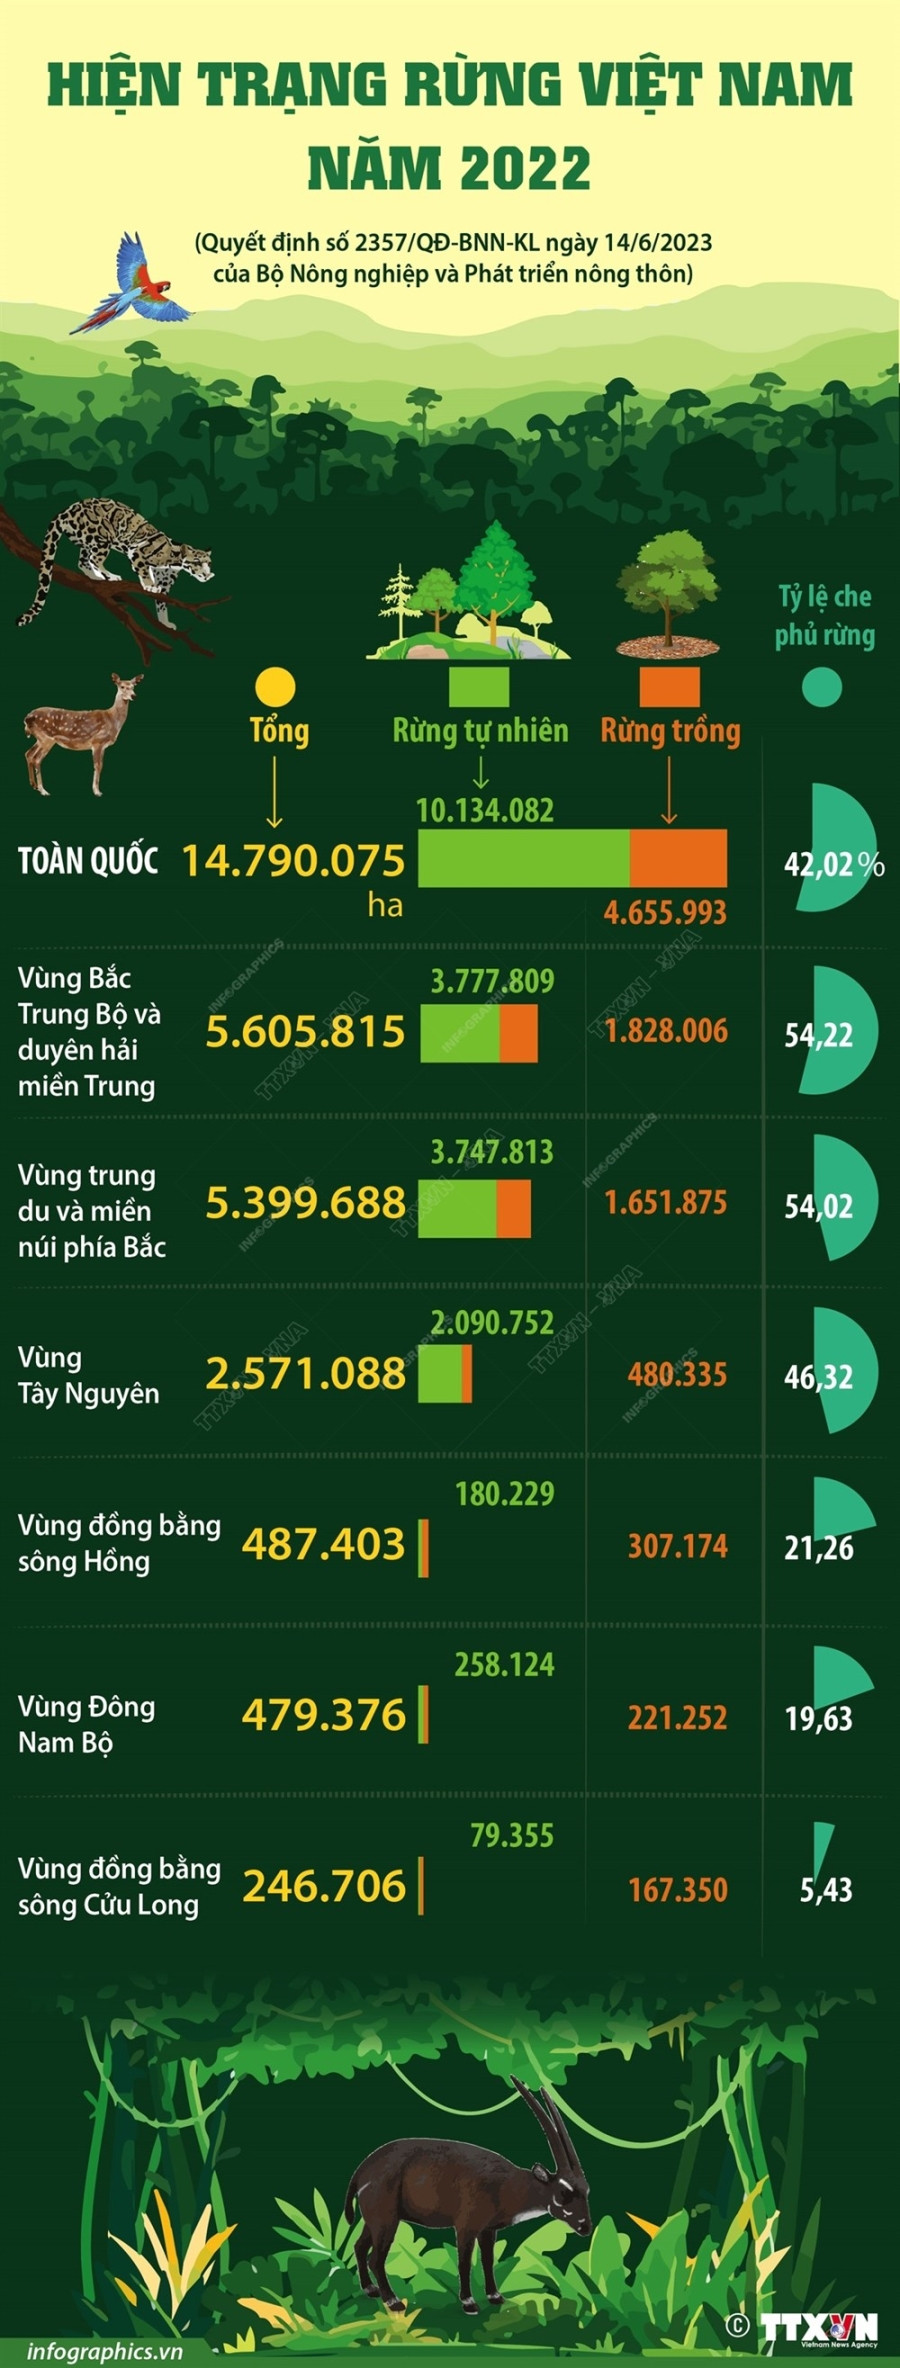 [Infographics] Tong quan ve hien trang rung Viet Nam nam 2022 hinh anh 1